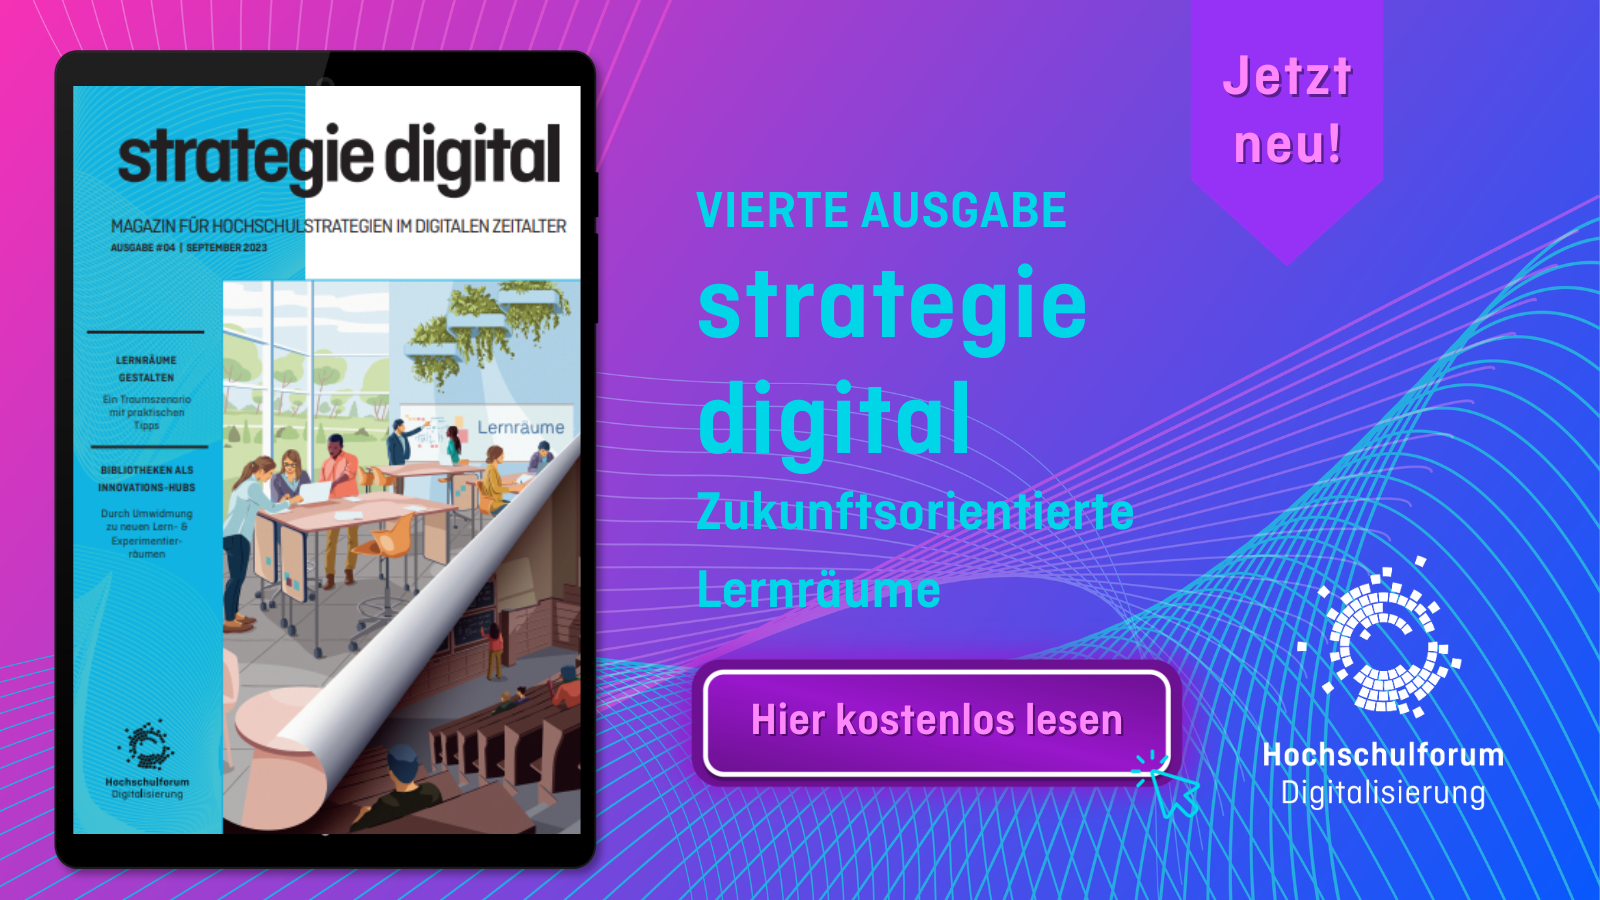 Die vierte Ausgabe des Magazins strategie digital ist kostenlos verfügbar.